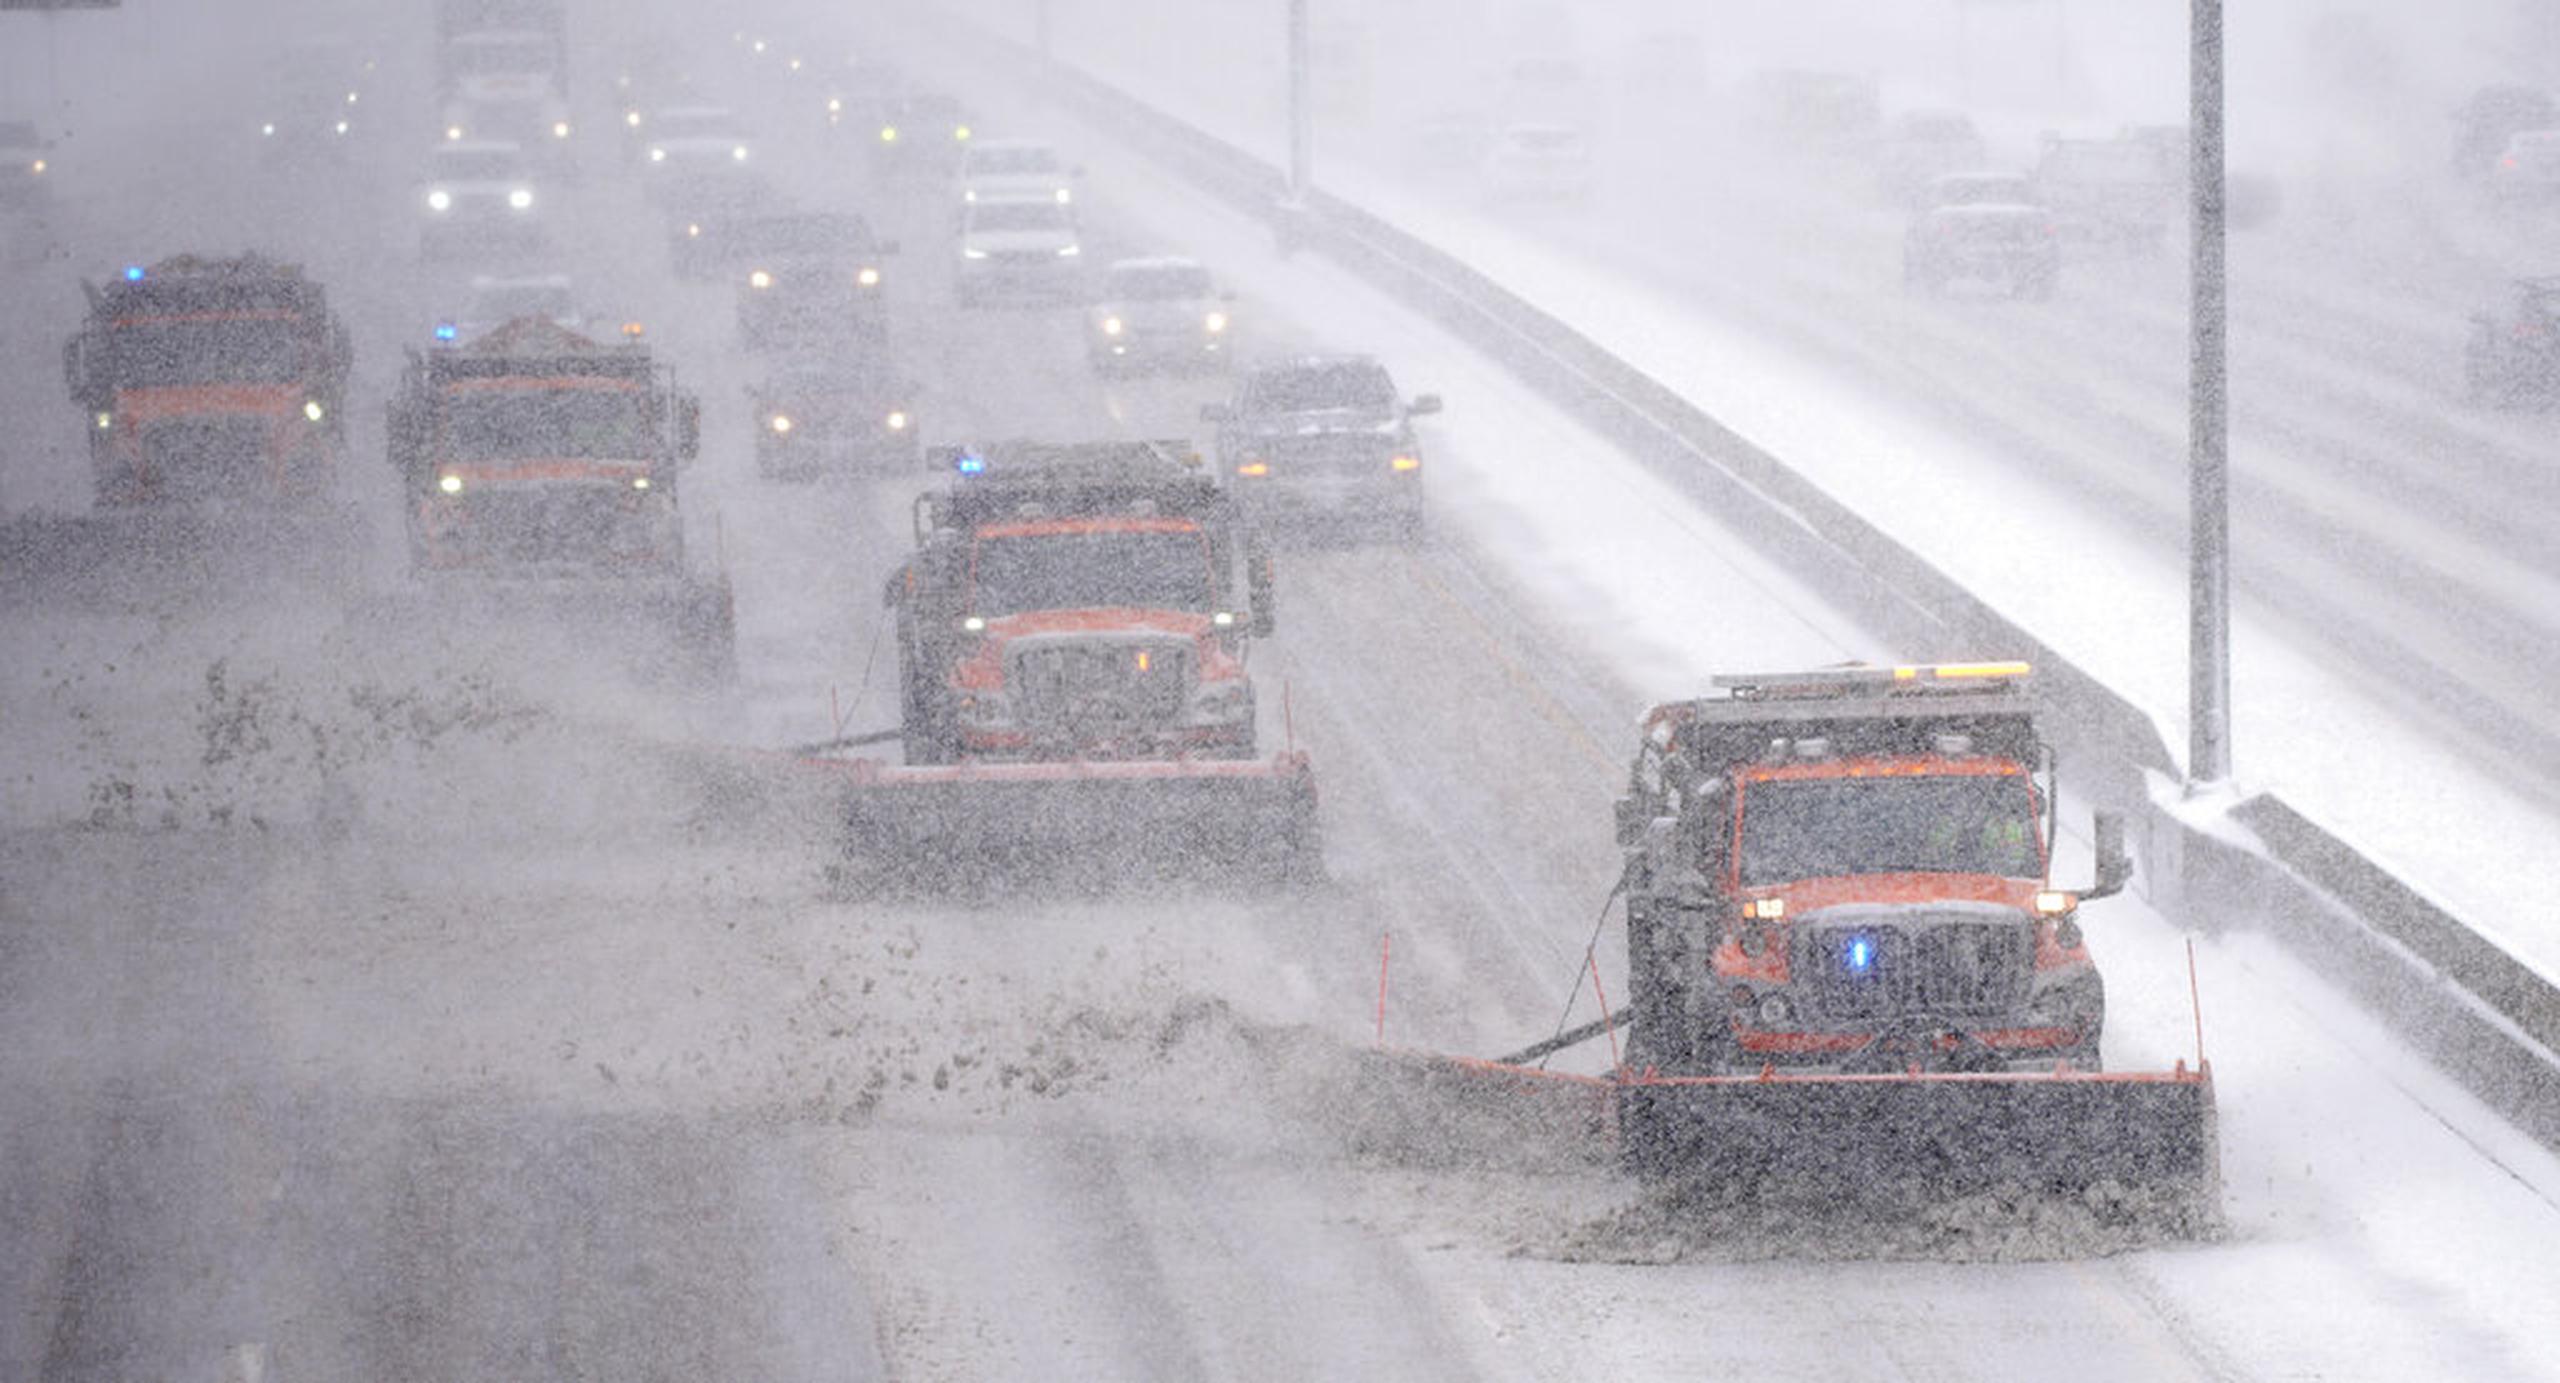 La carretera interestatal 25 en Denver cubierta de nieve por la tormenta invernal el 27 de enero de 2022.